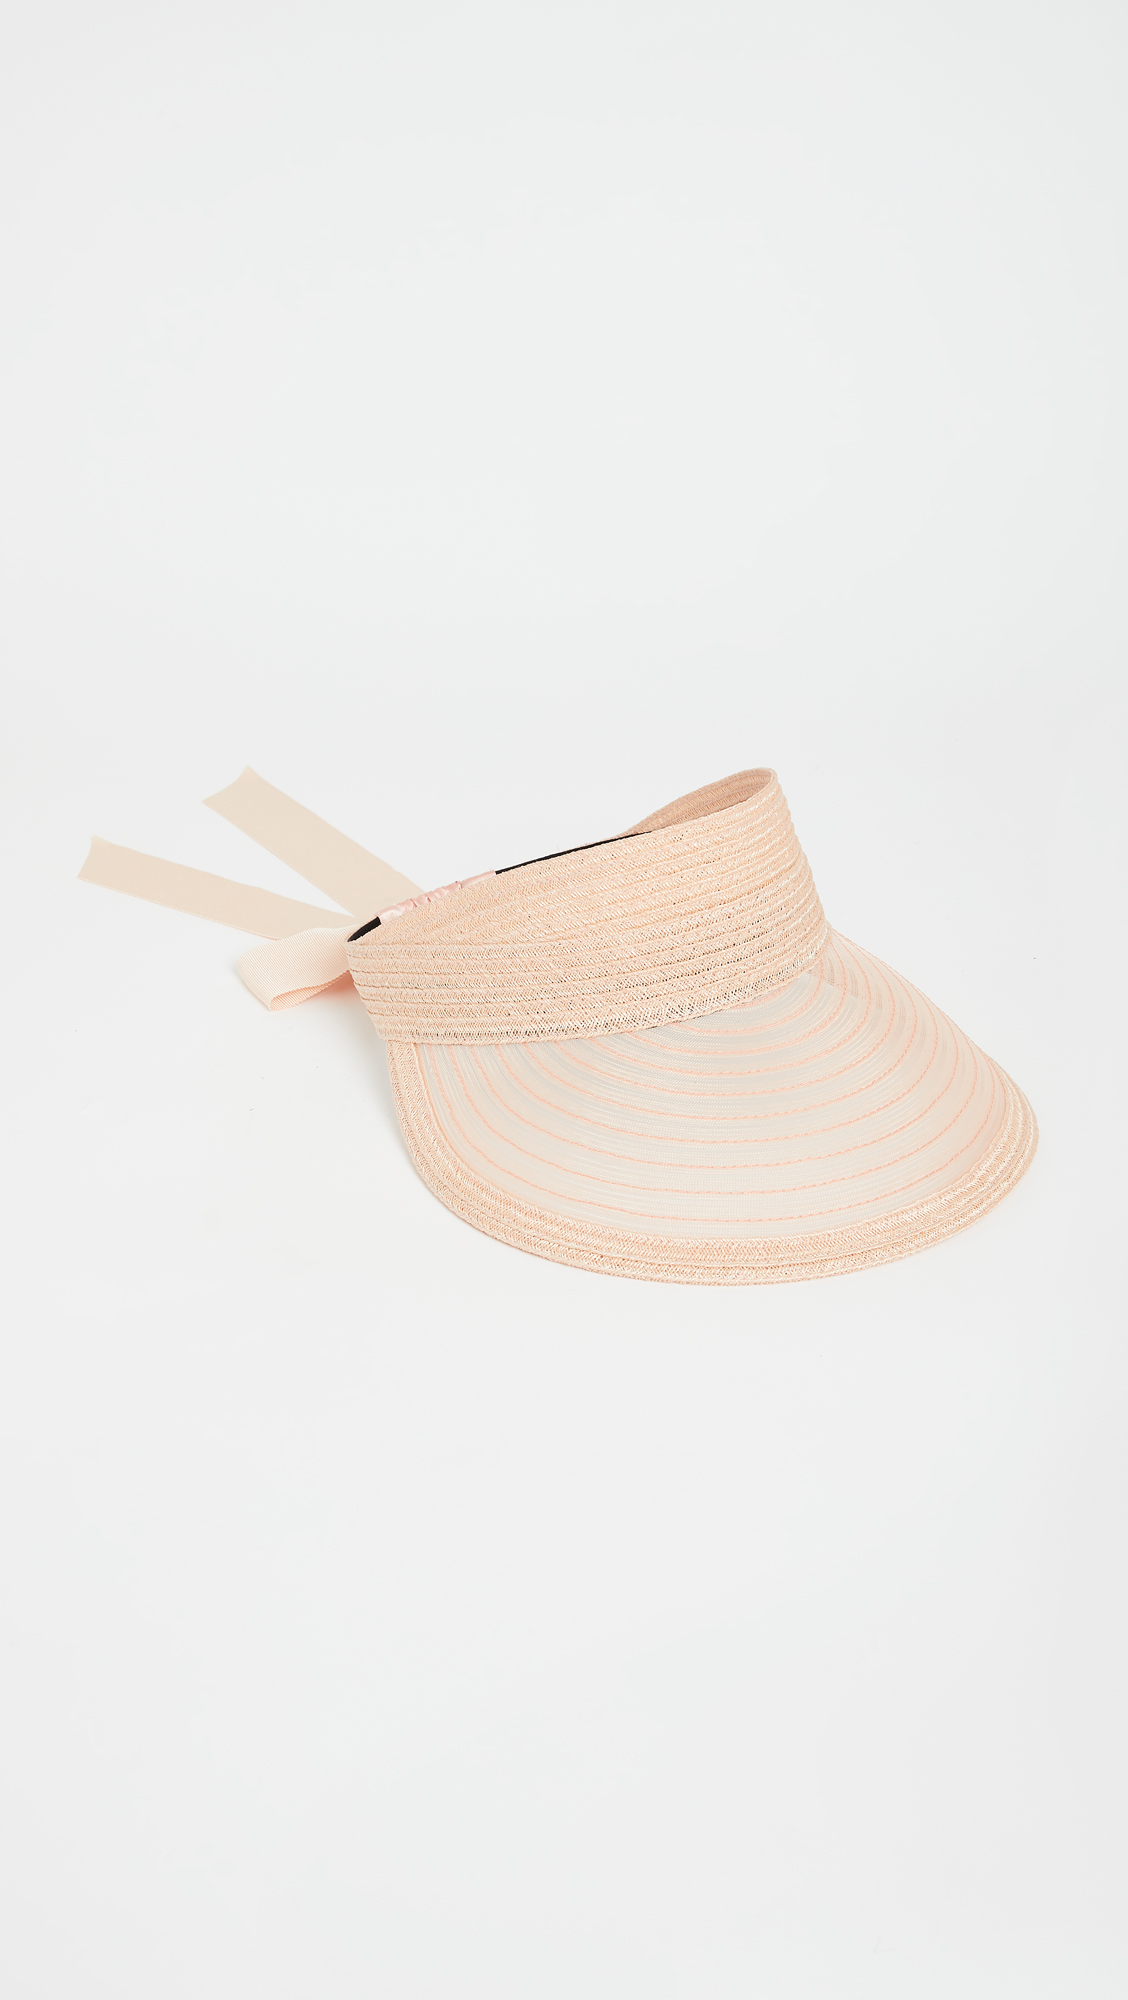 Eugenia Kim Ricky Hat on Shopbop Cute Summer Sun Hats for Your Wedding or Elopement Bridal Musings - 25 chiếc mũ cô dâu mùa hè hợp thời trang cho chuyến đi của bạn Cottagecore